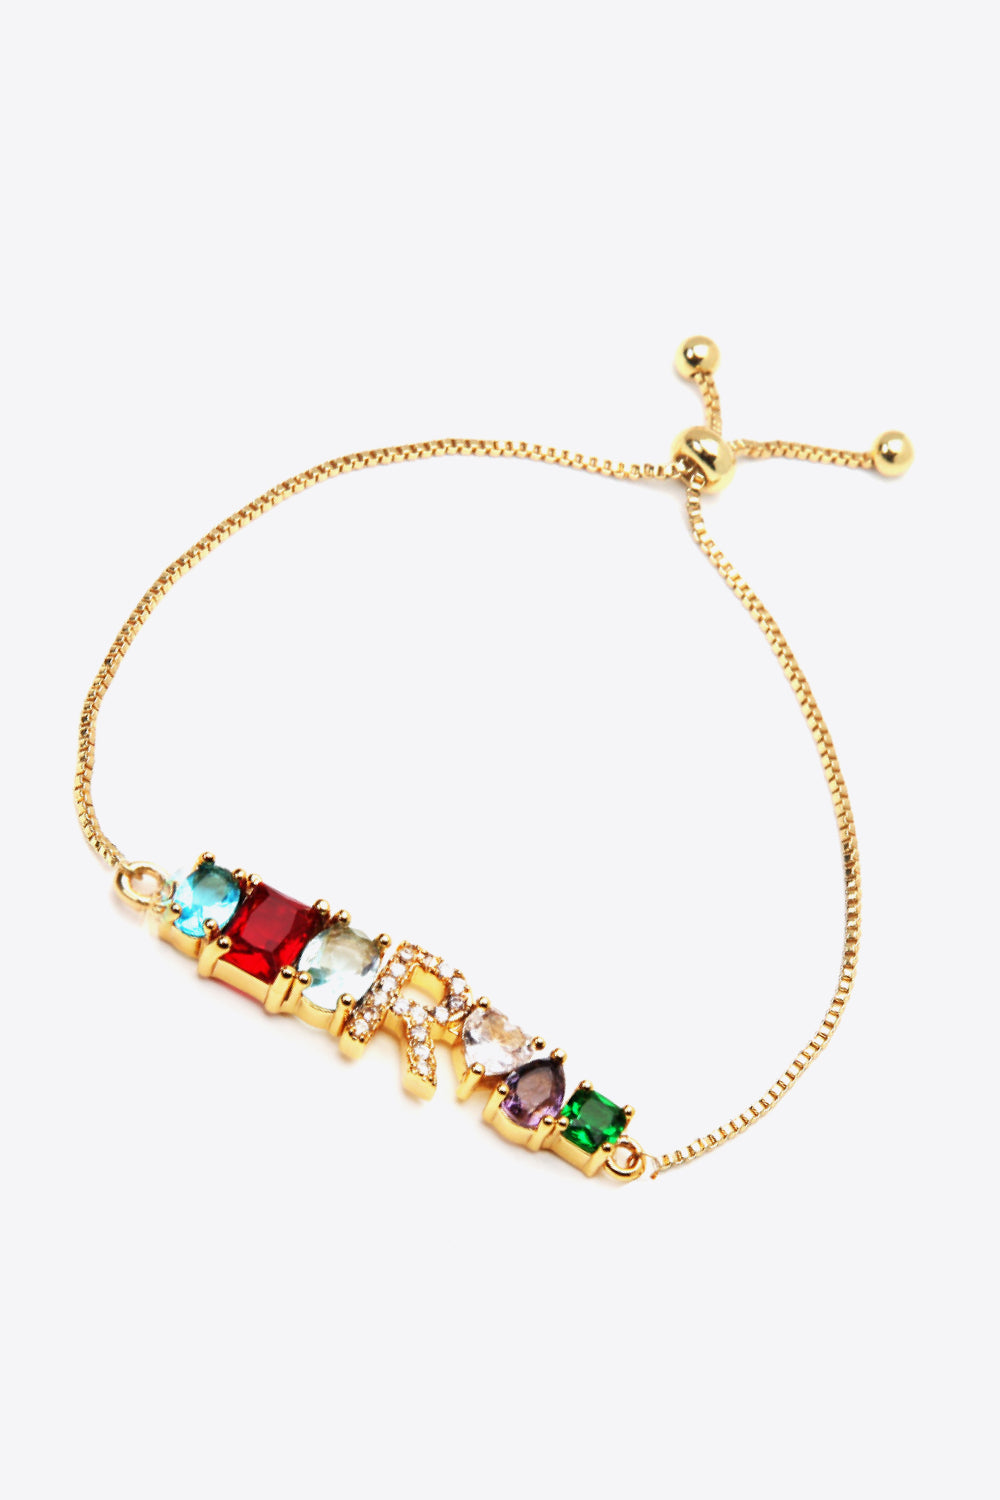 K to T Zircon Bracelet - Women’s Jewelry - Bracelets - 23 - 2024